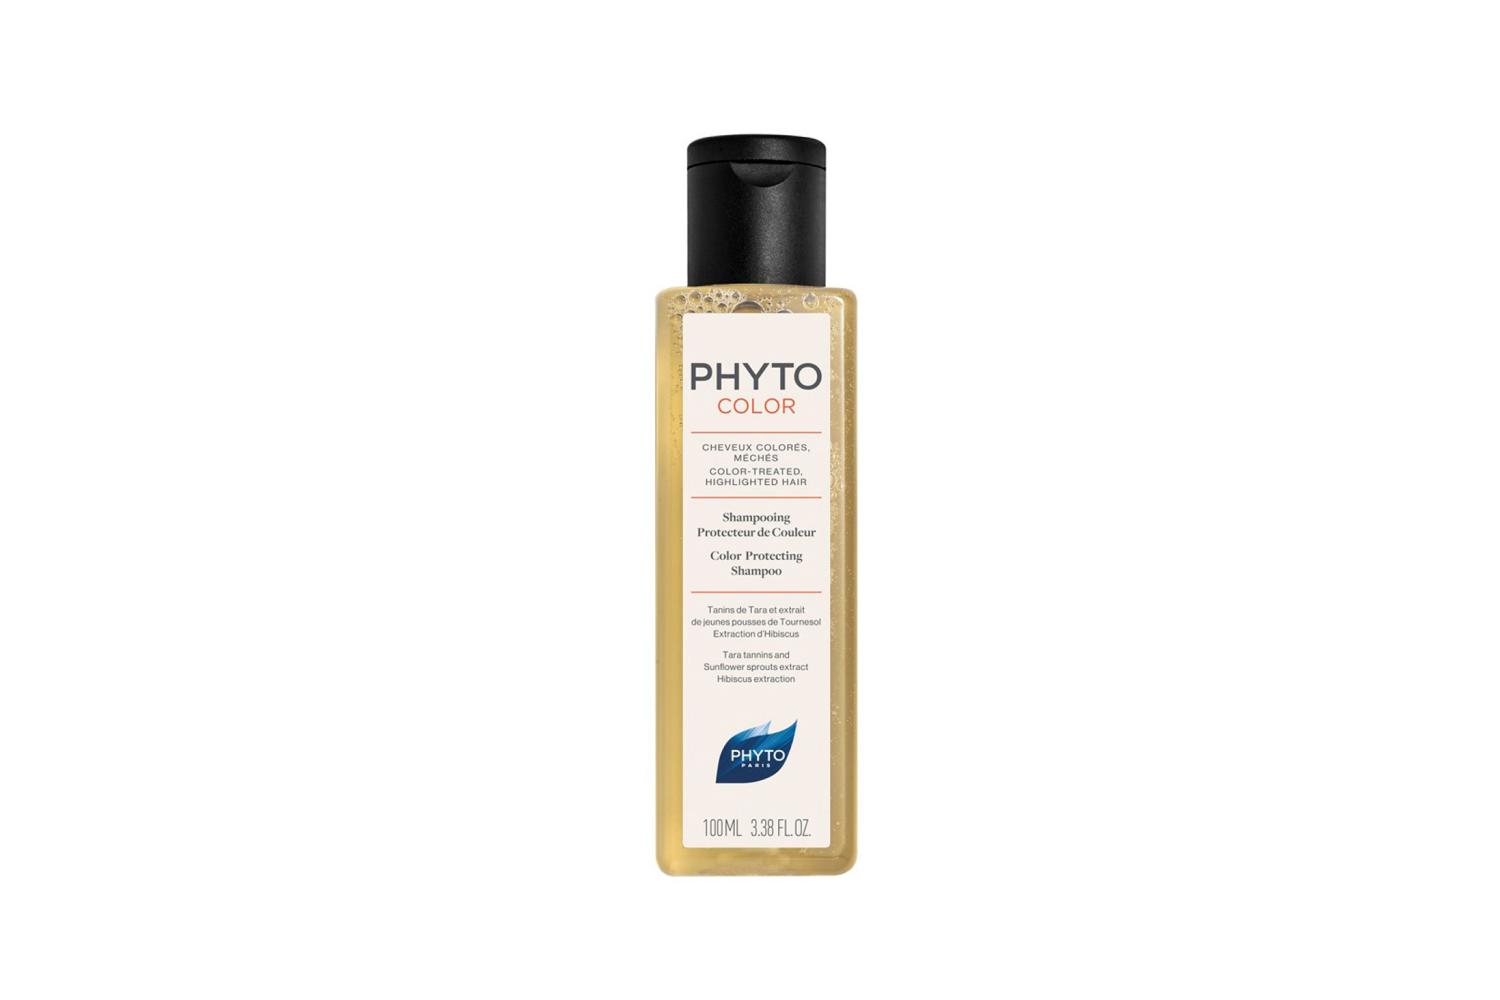 Шампунь для волос Color Shampoing Protection De Couleur, Phyto, 738 руб. (randewoo.ru)